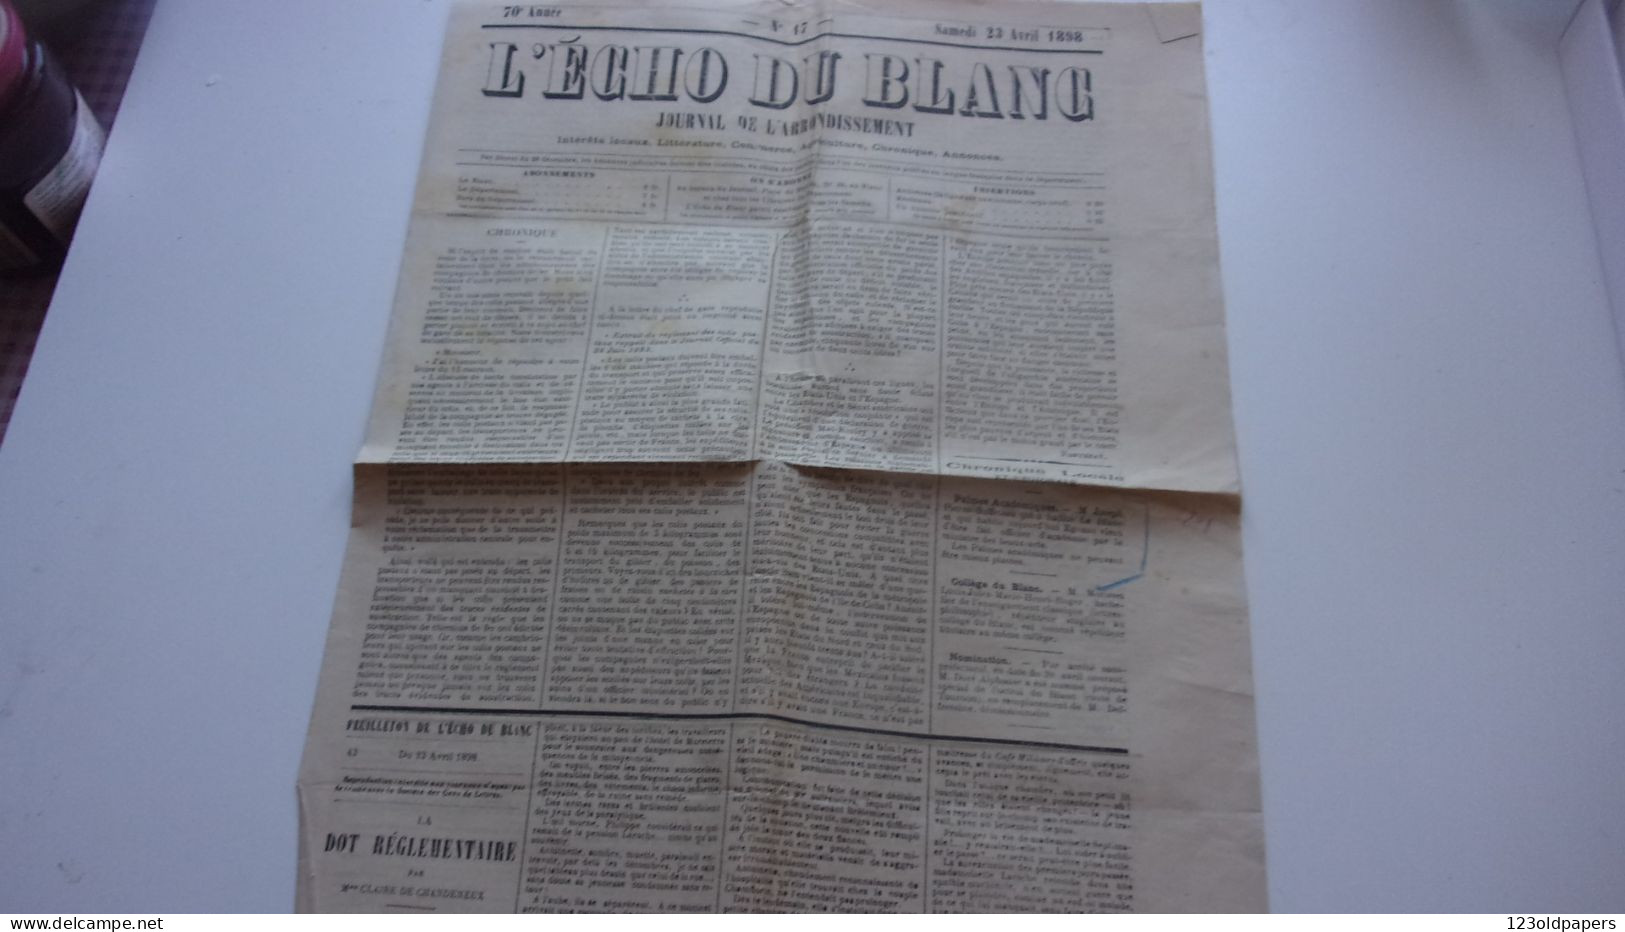 L ECHO DU BLANC INDRE 23 AVRIL 1898 JOURNAL DE L ARRONDISSEMENT - Historical Documents